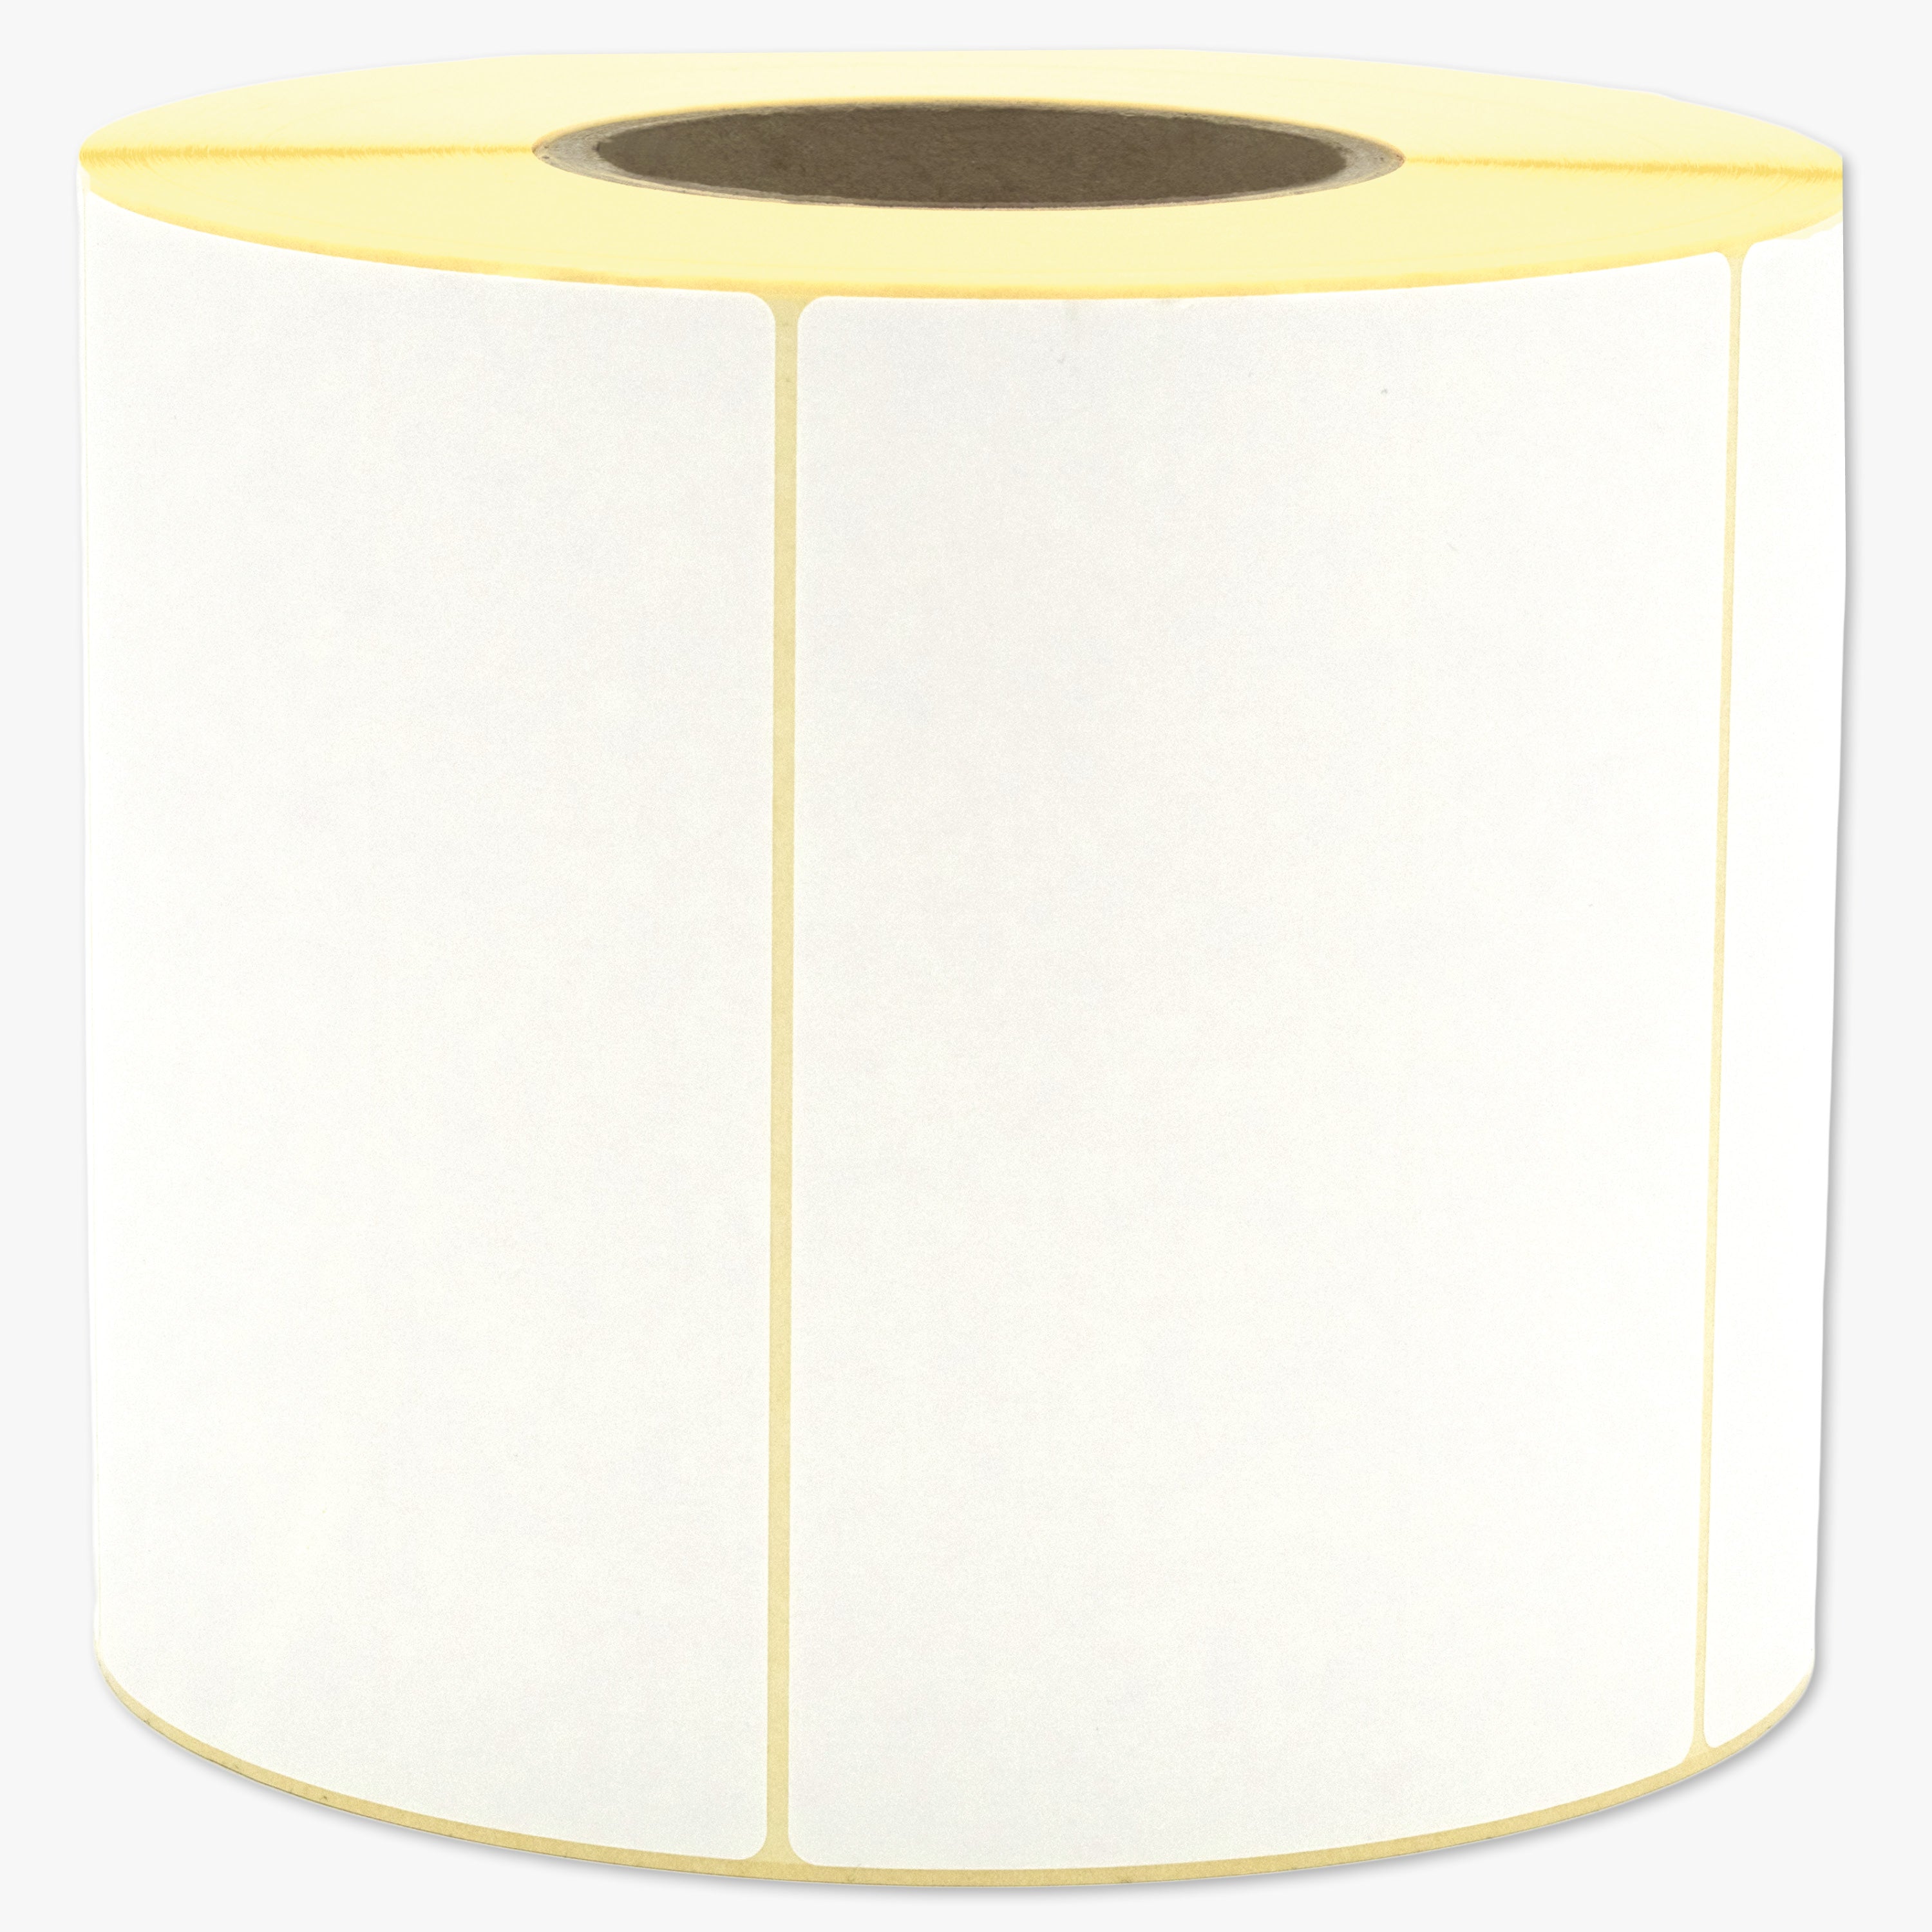 Thermotransfer-Etiketten, Papier, 148 x 99,6 mm, 3 Zoll Kern, permanent haftend, weiß,  1.476 Etiketten pro Rolle